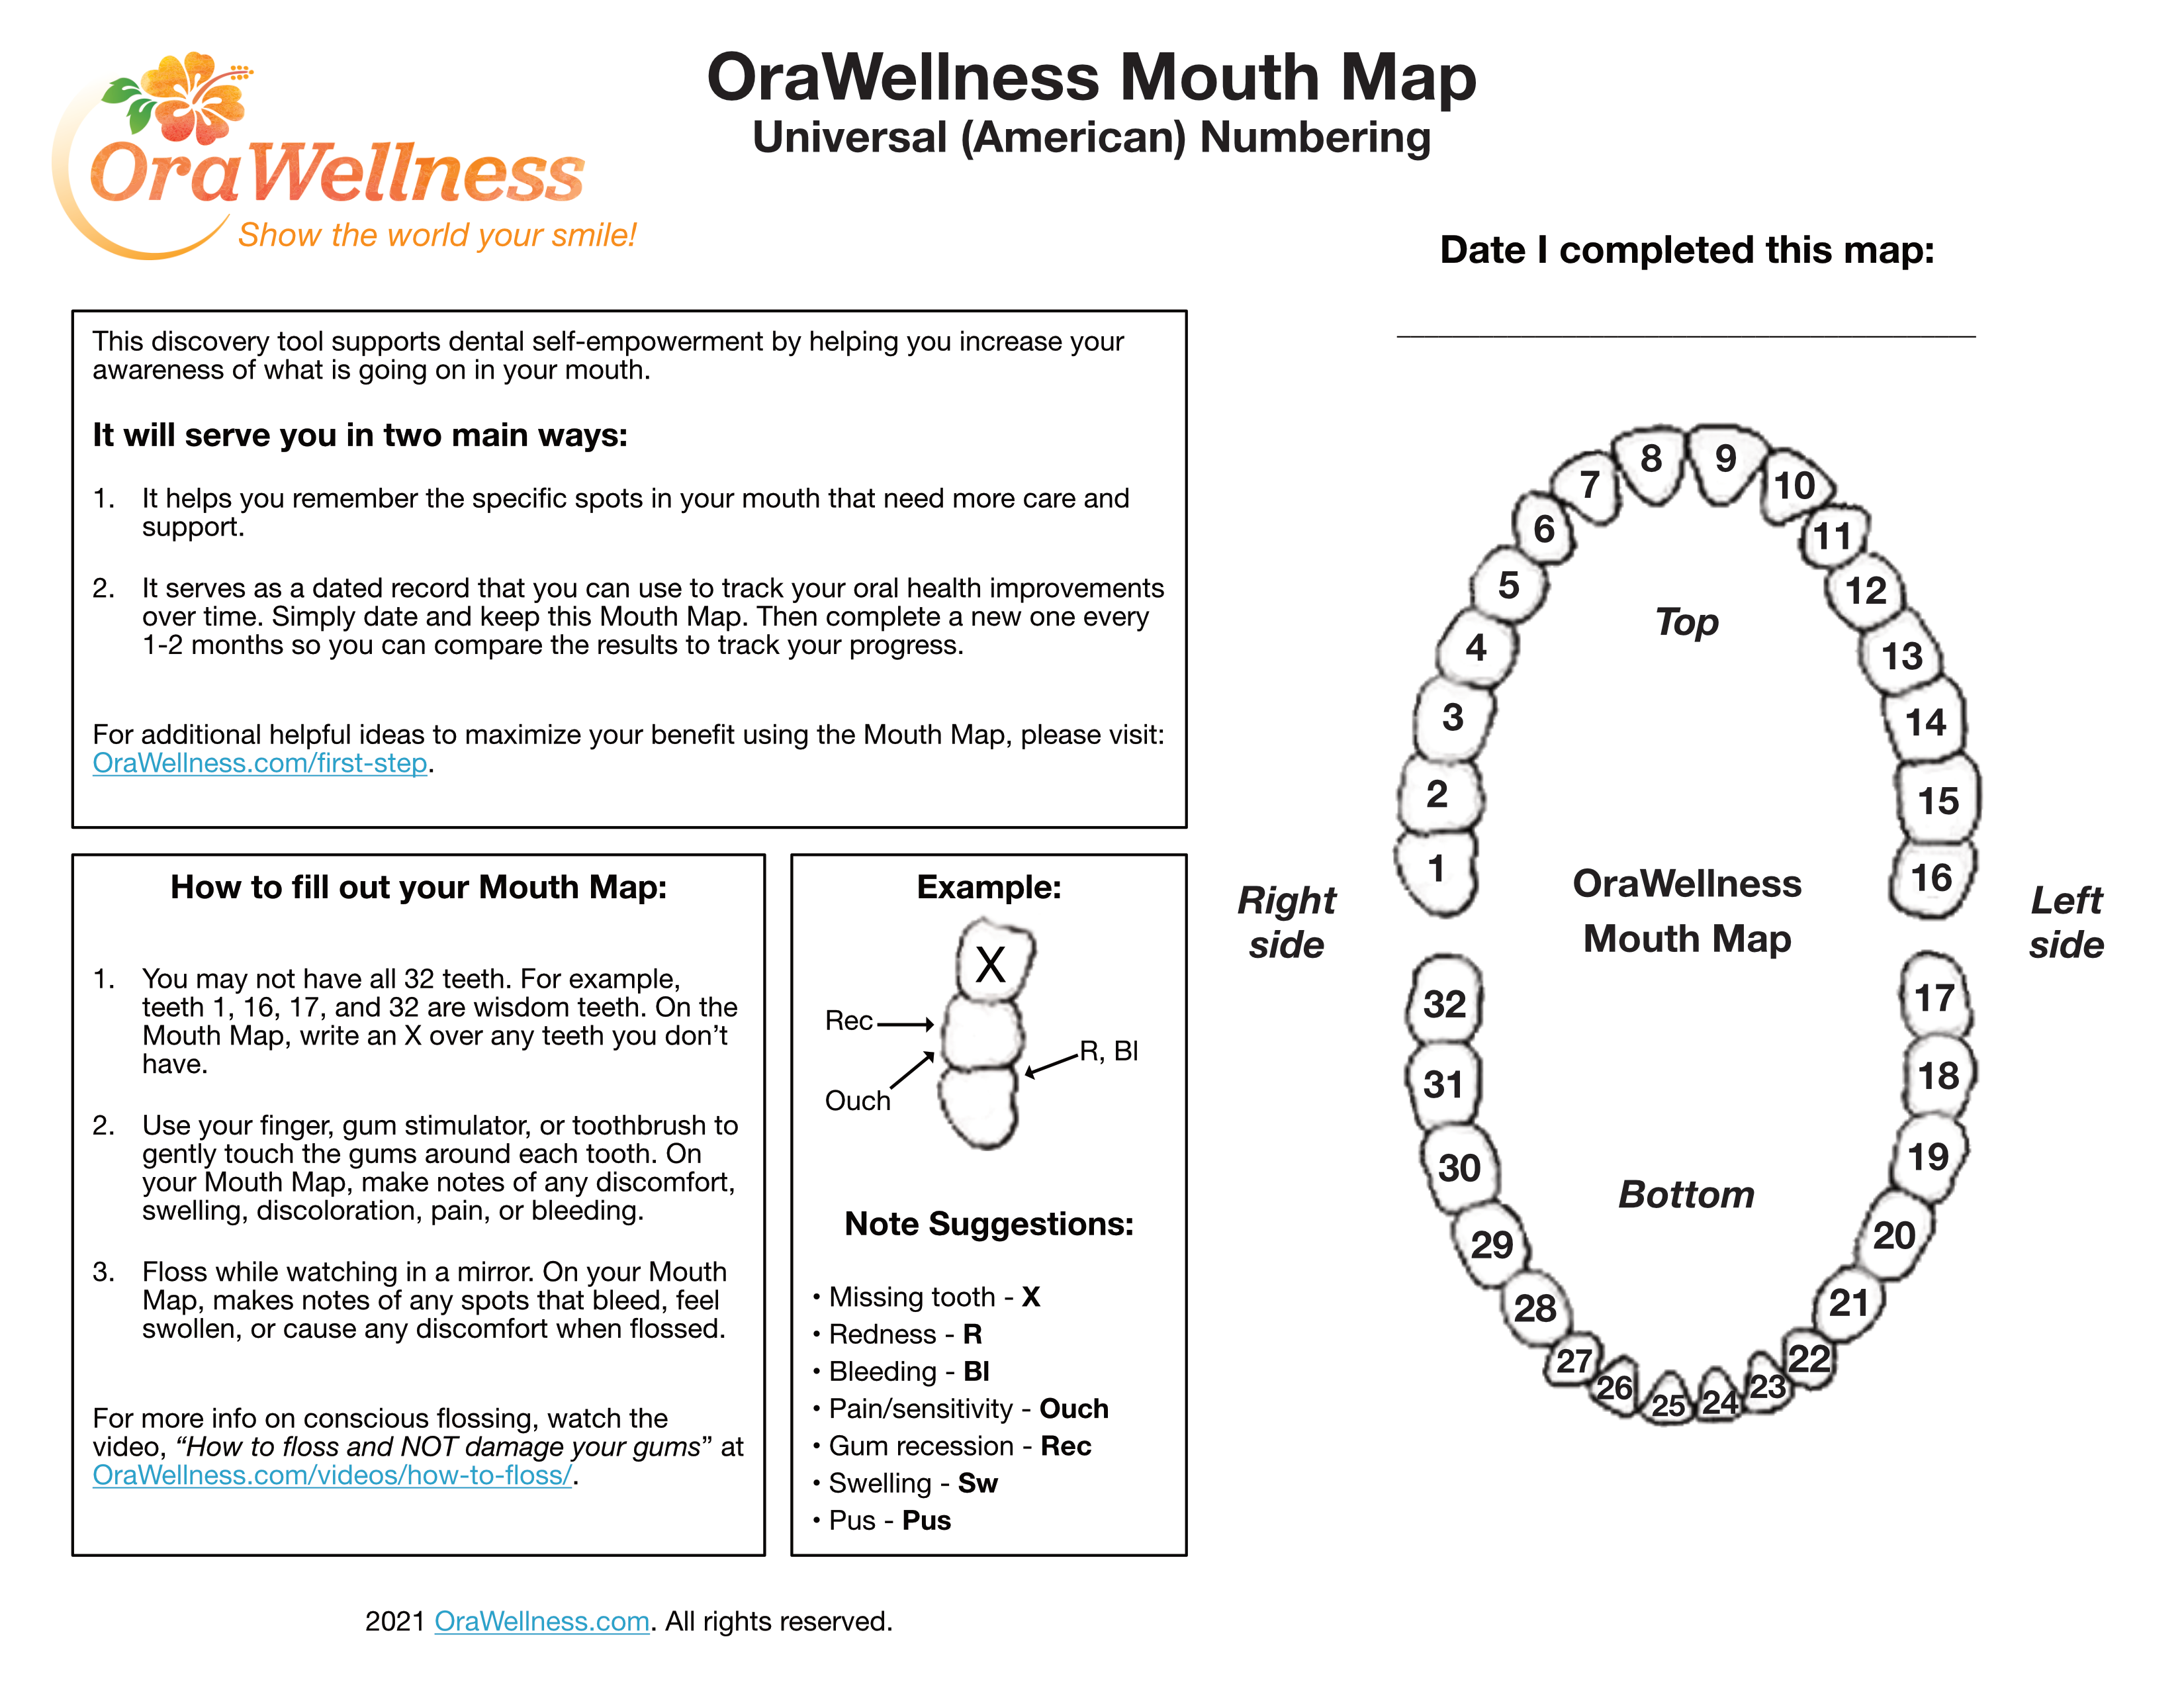 OraWellness Mouth Map 2021 Universal 